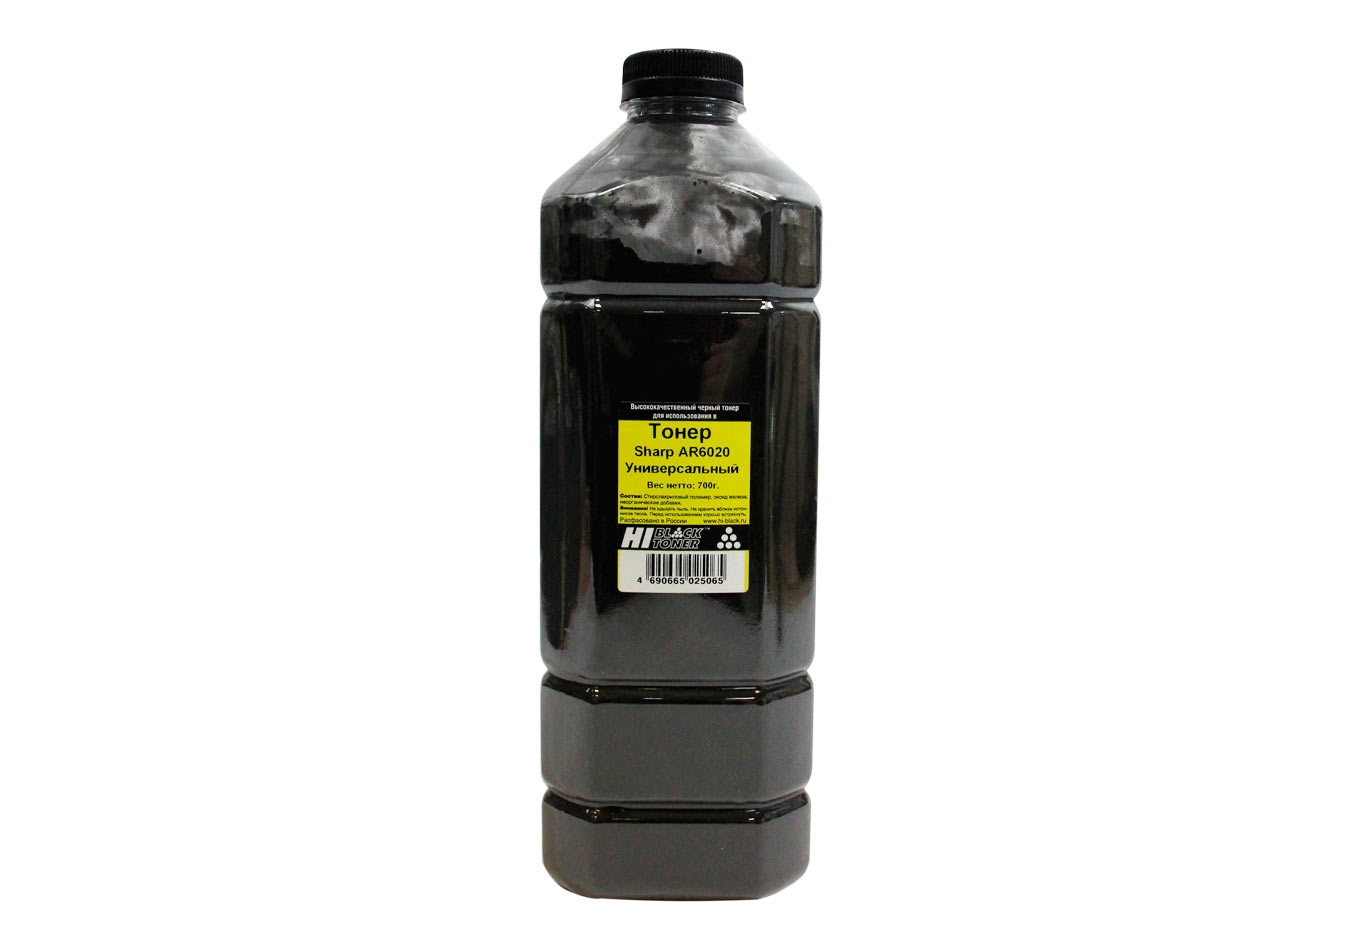 Тонер универсальный Hi-Black (MX-237GT) для Sharp AR-6020, чёрный (700 гр.)